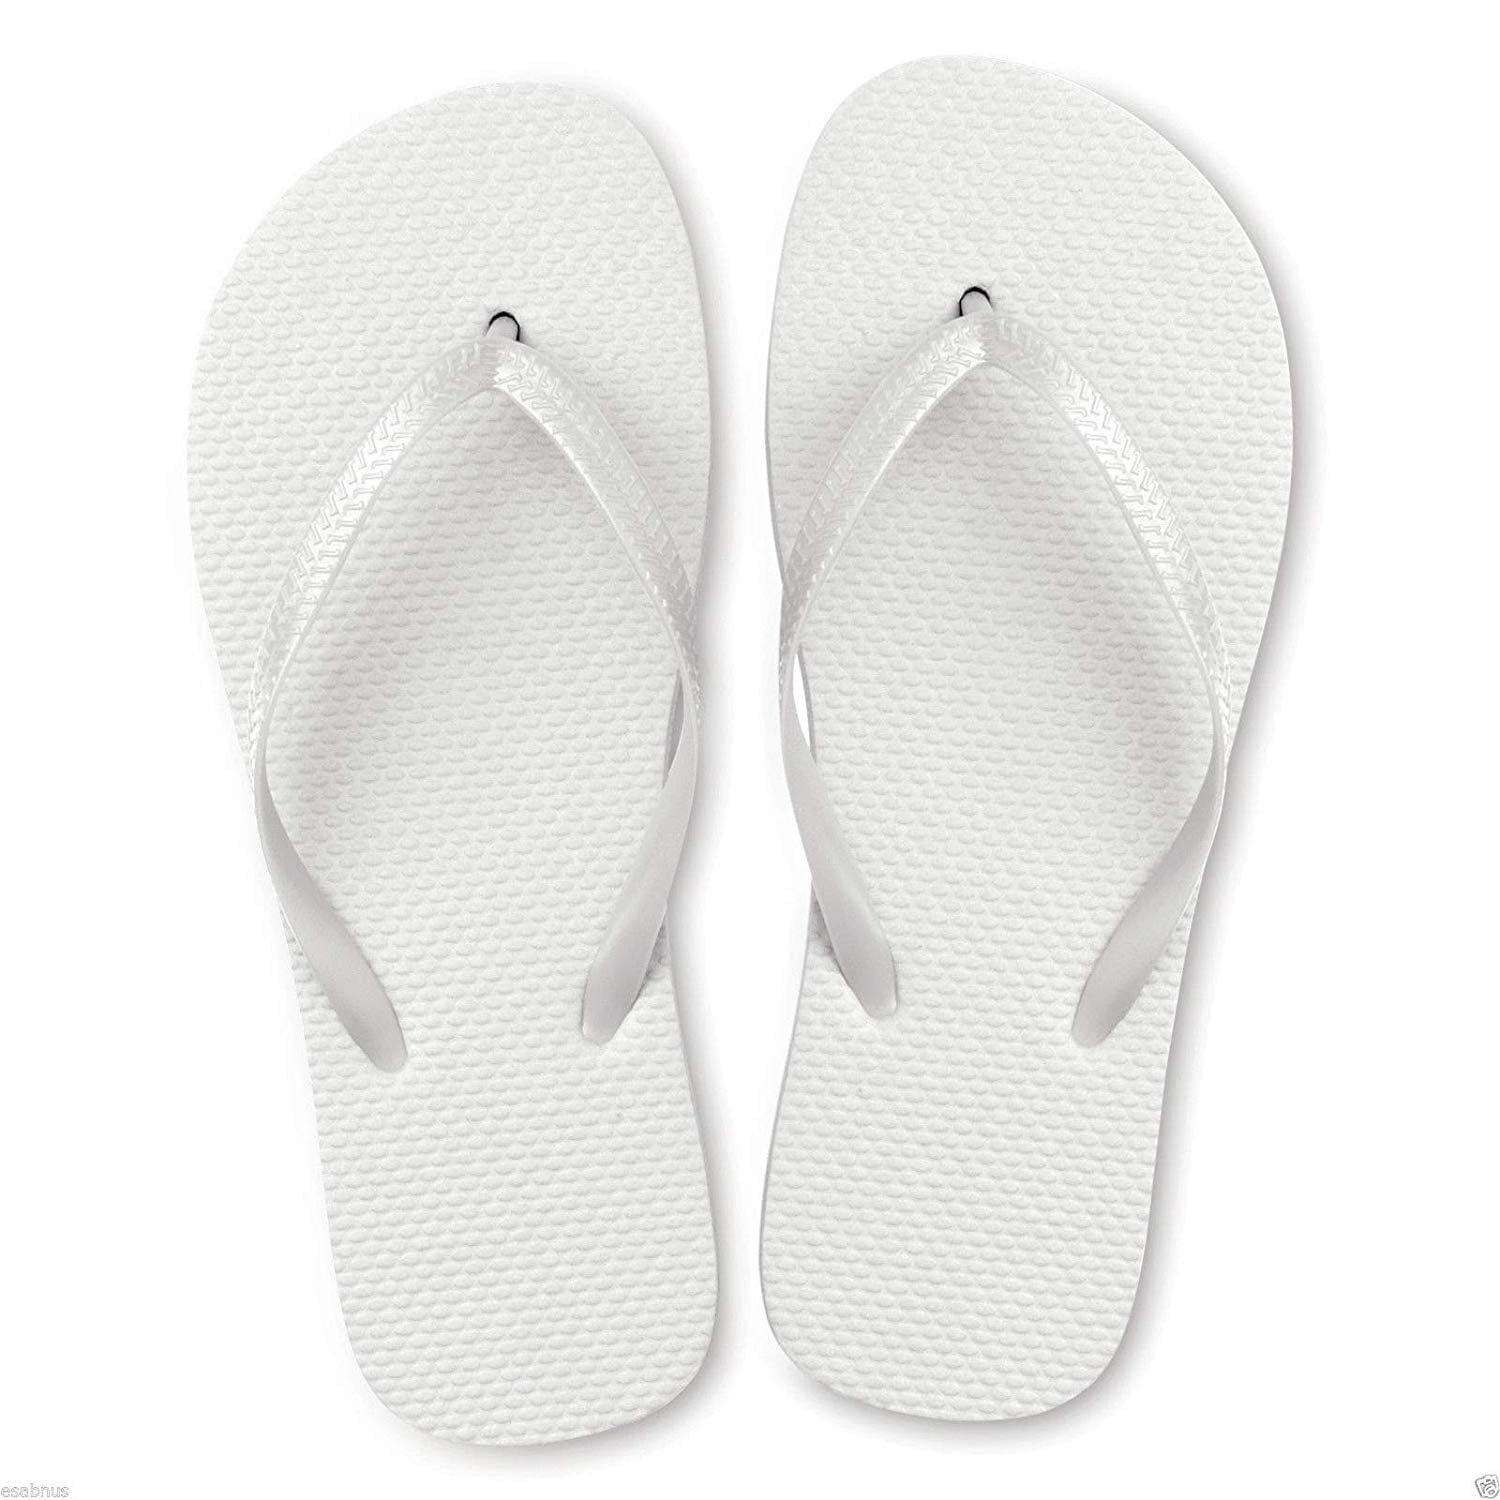 white slippers bulk